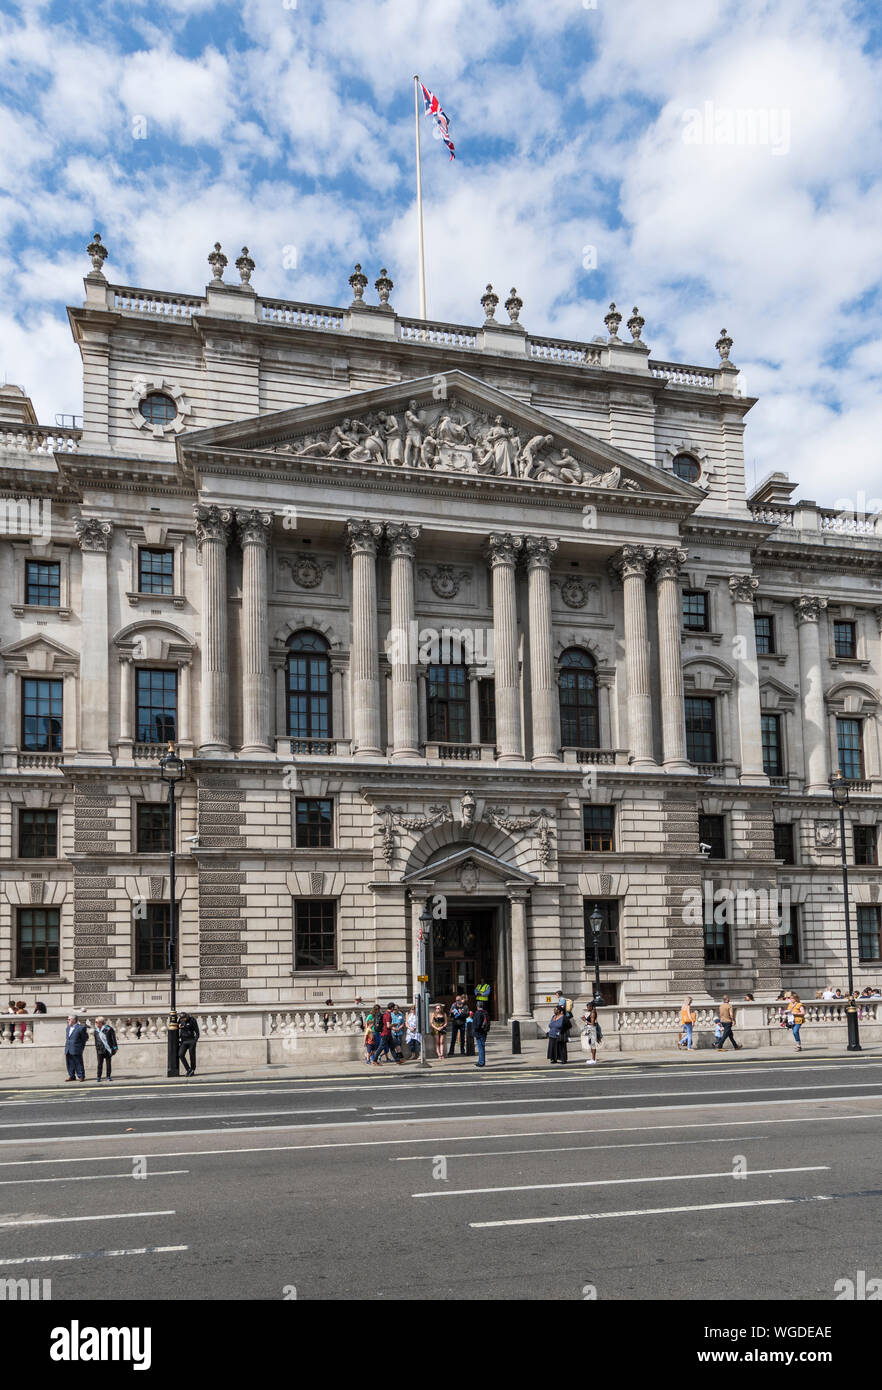 Ingresso a Sua Maestà (HM) delle entrate e delle dogane edificio in Parlamento Street, City of Westminster, Londra, Inghilterra, Regno Unito. Foto Stock